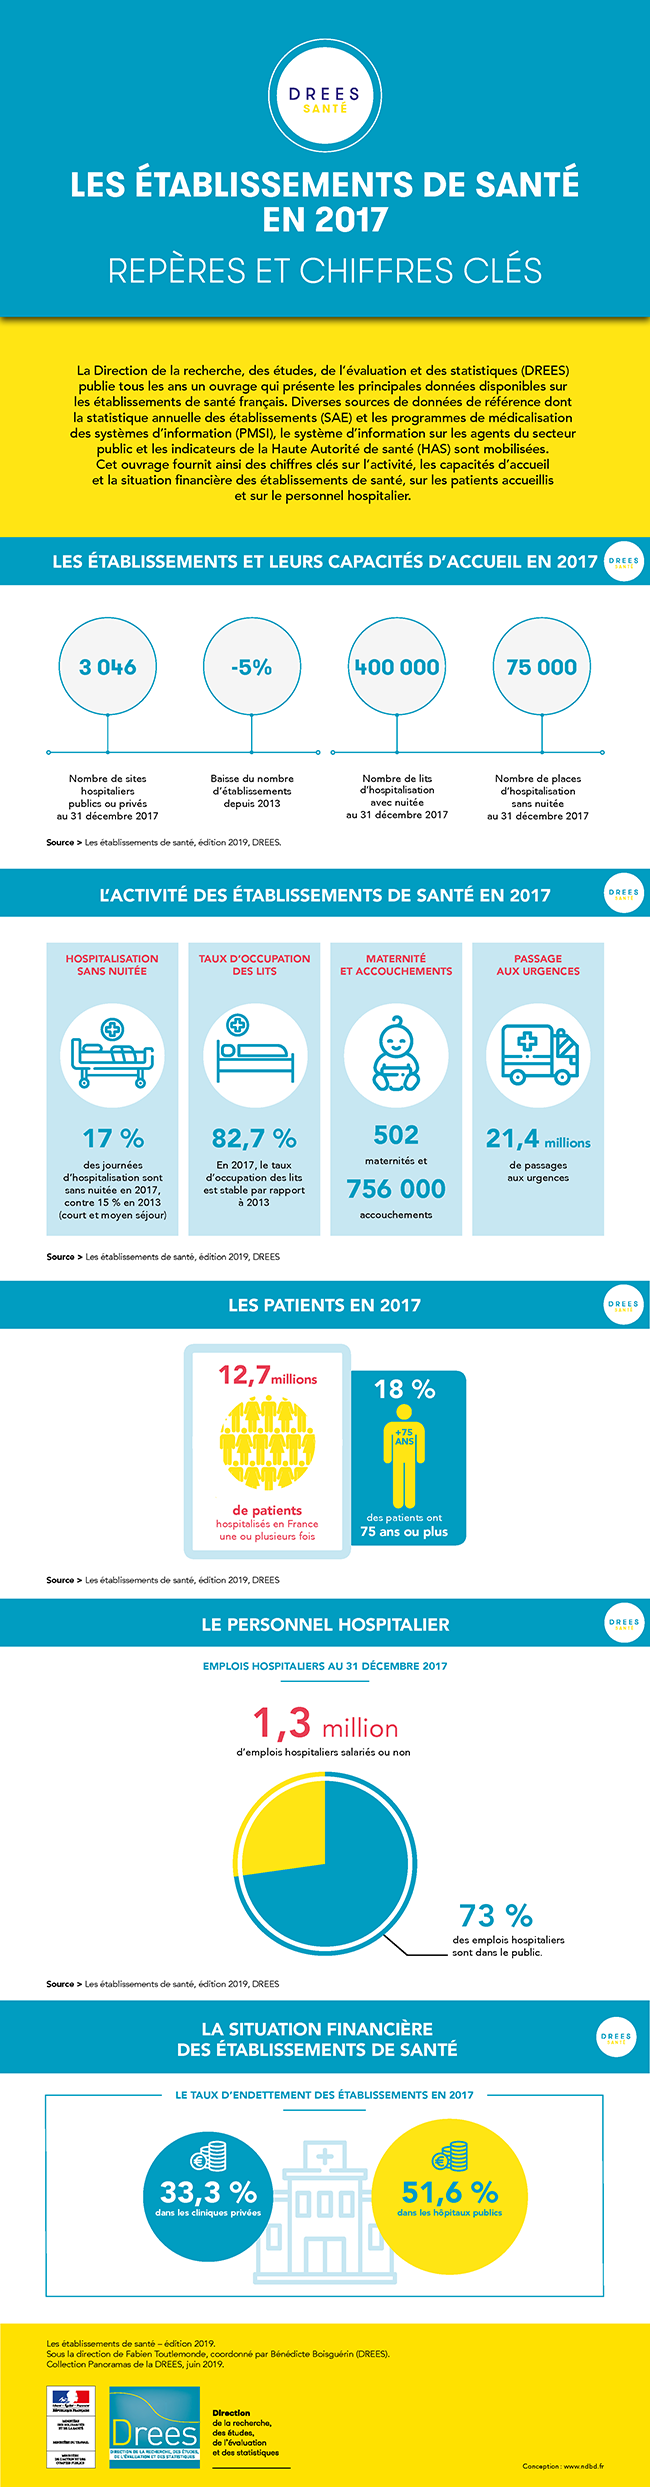 Infographie : Les établissements de santé en 2017 – repères et chiffres clés